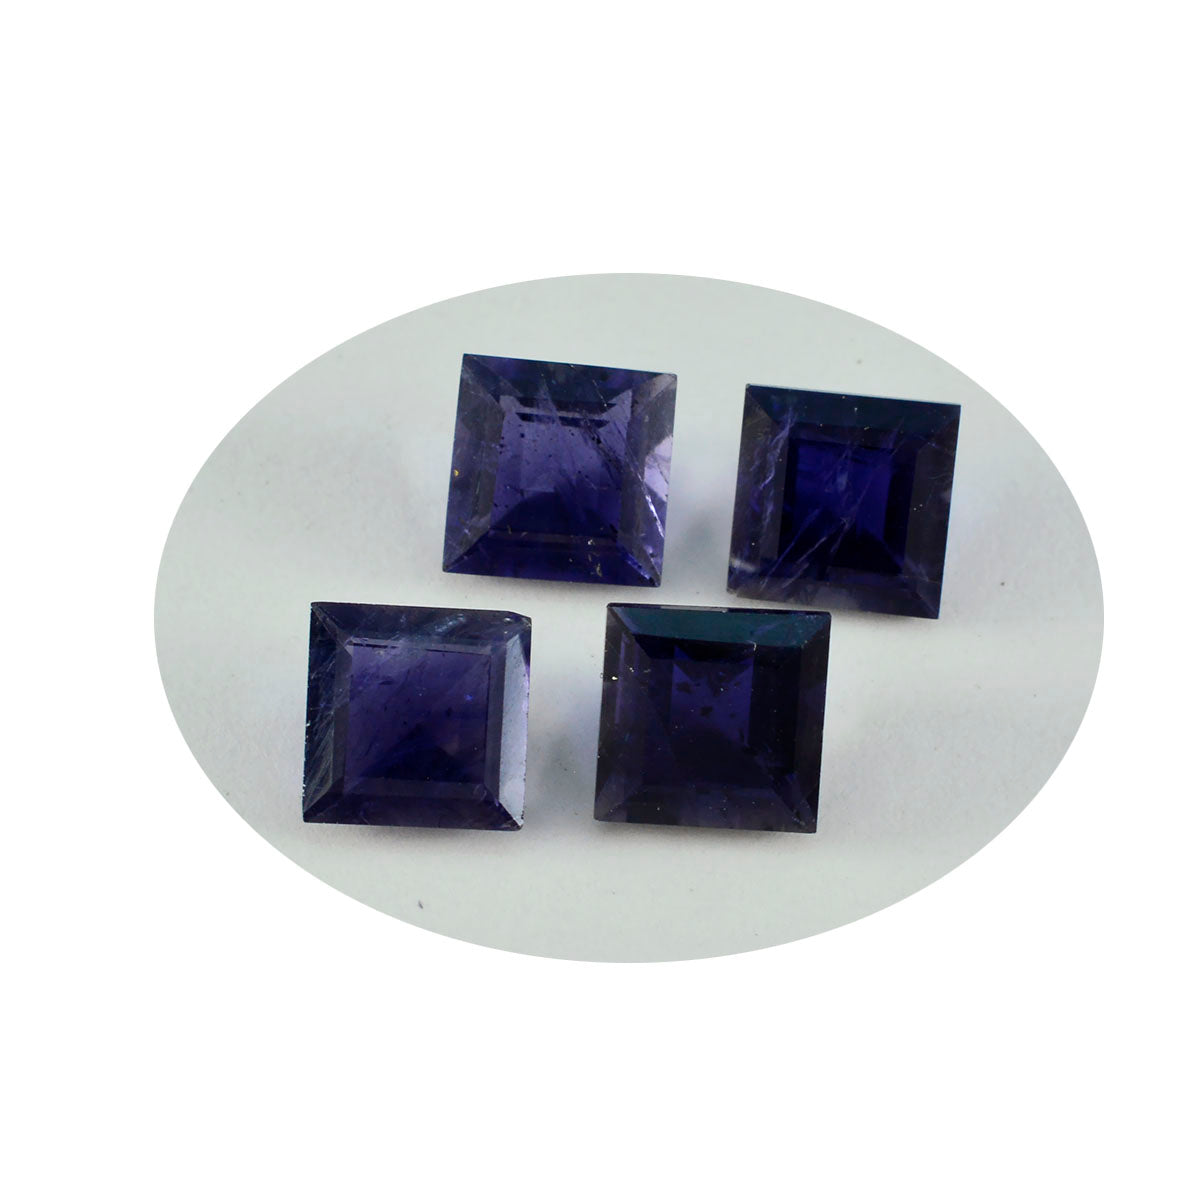 riyogems 1 шт. синий иолит ограненный 15x15 мм квадратной формы красивый качественный драгоценный камень